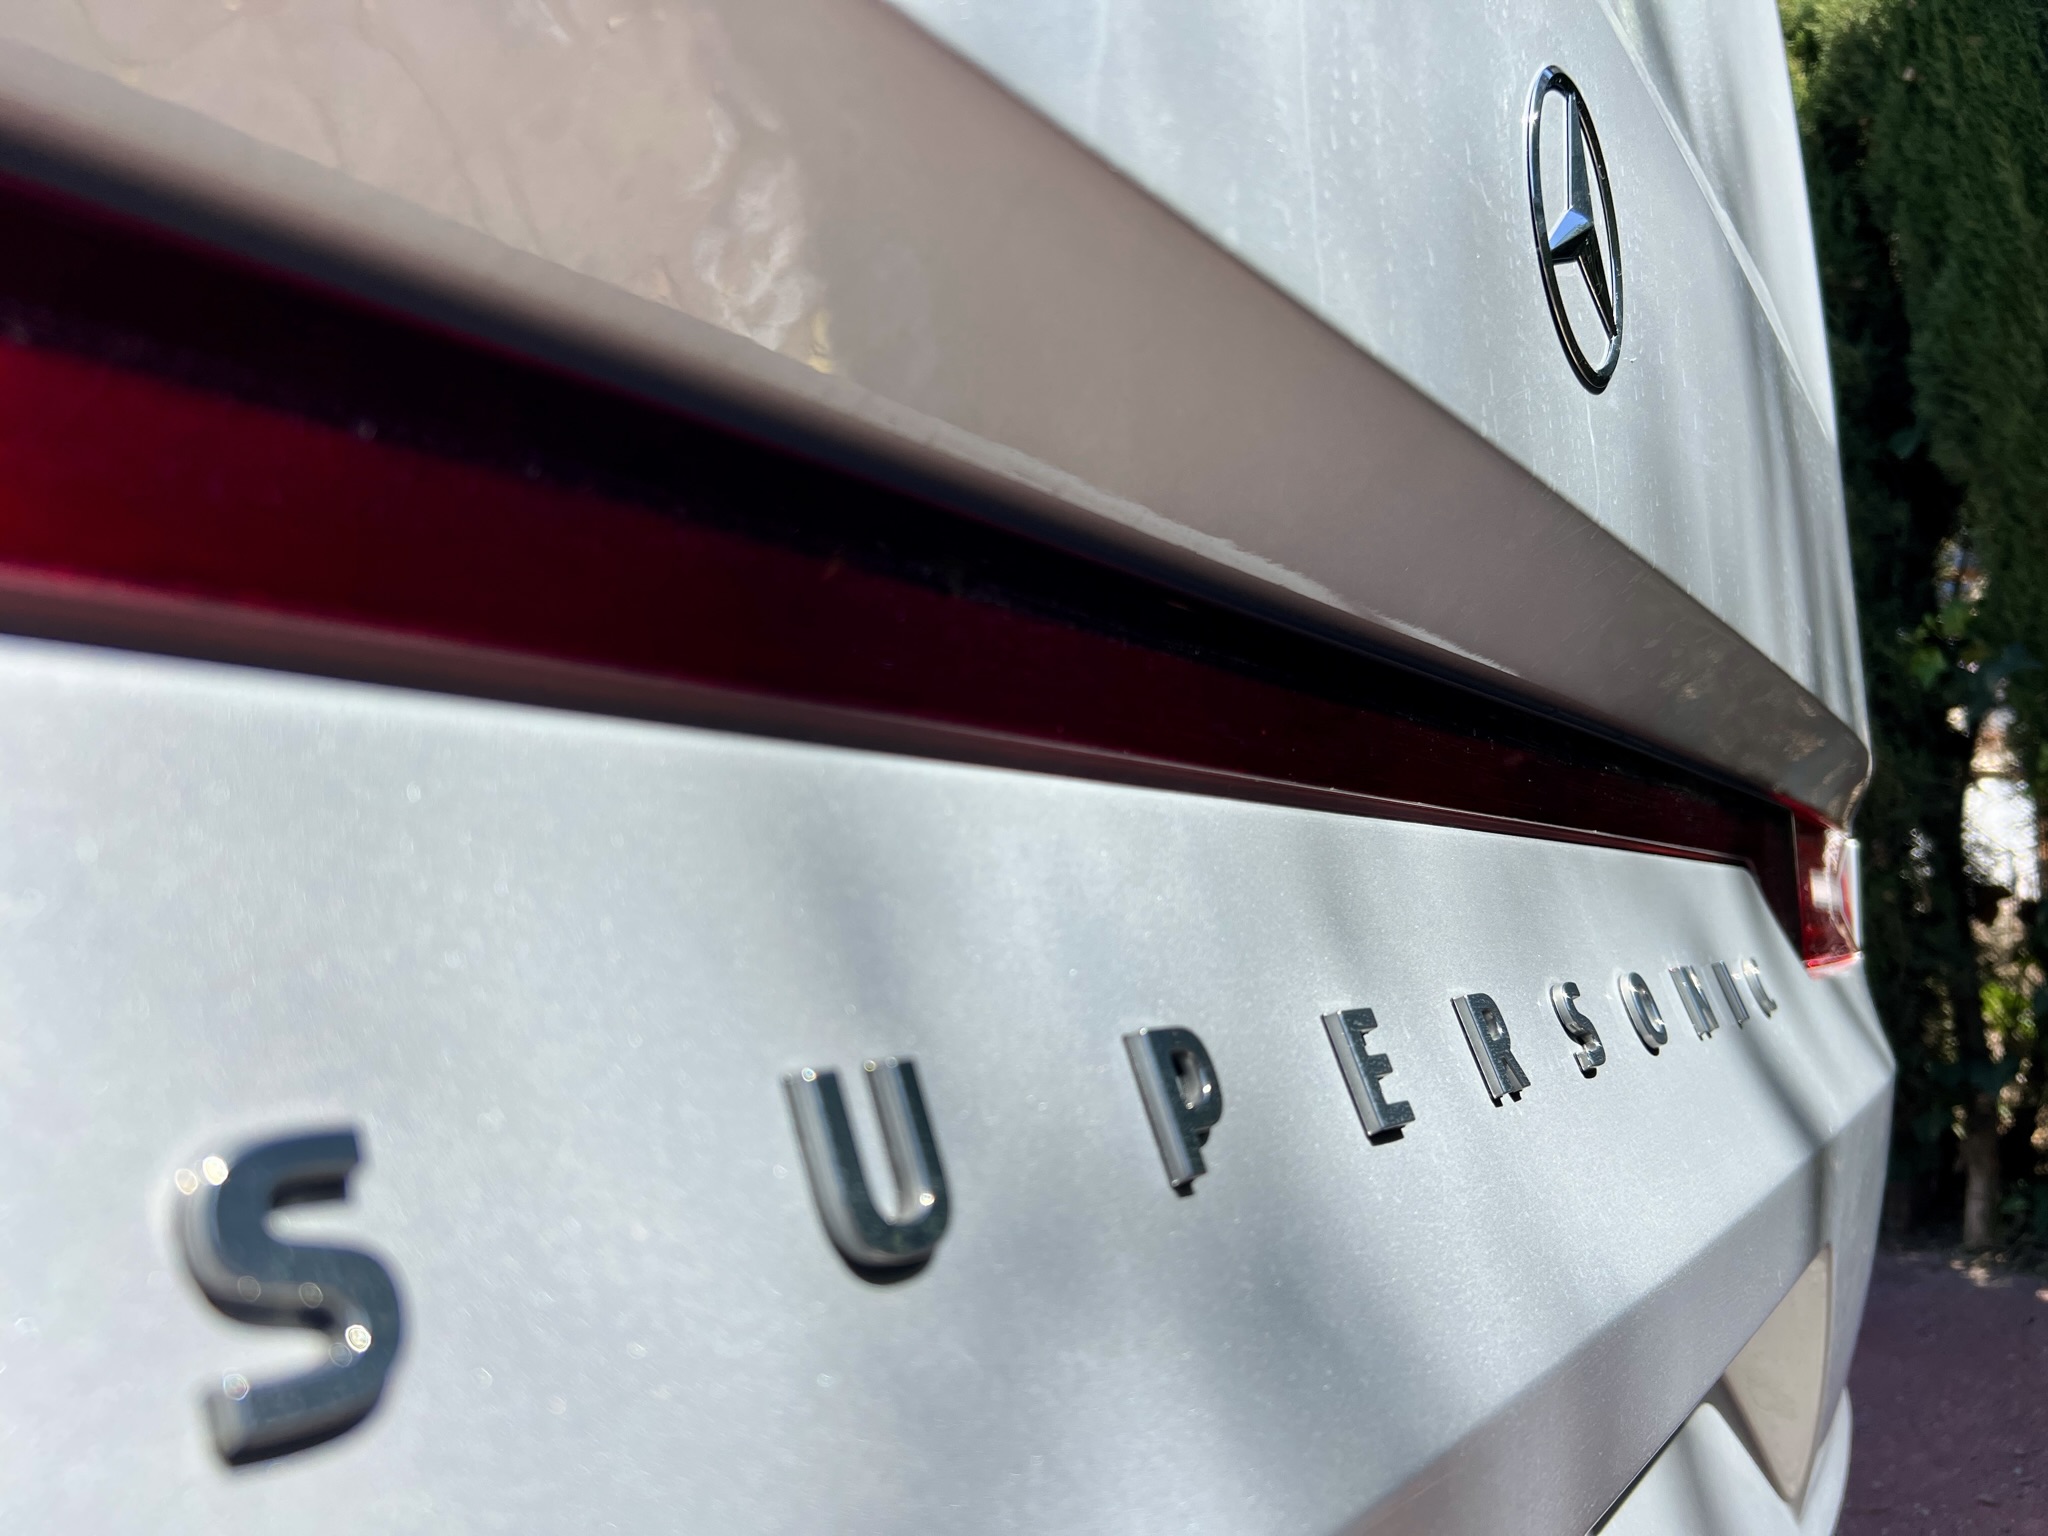 Presentamos la nueva Supersonic de Adria sobre Mercedes Benz